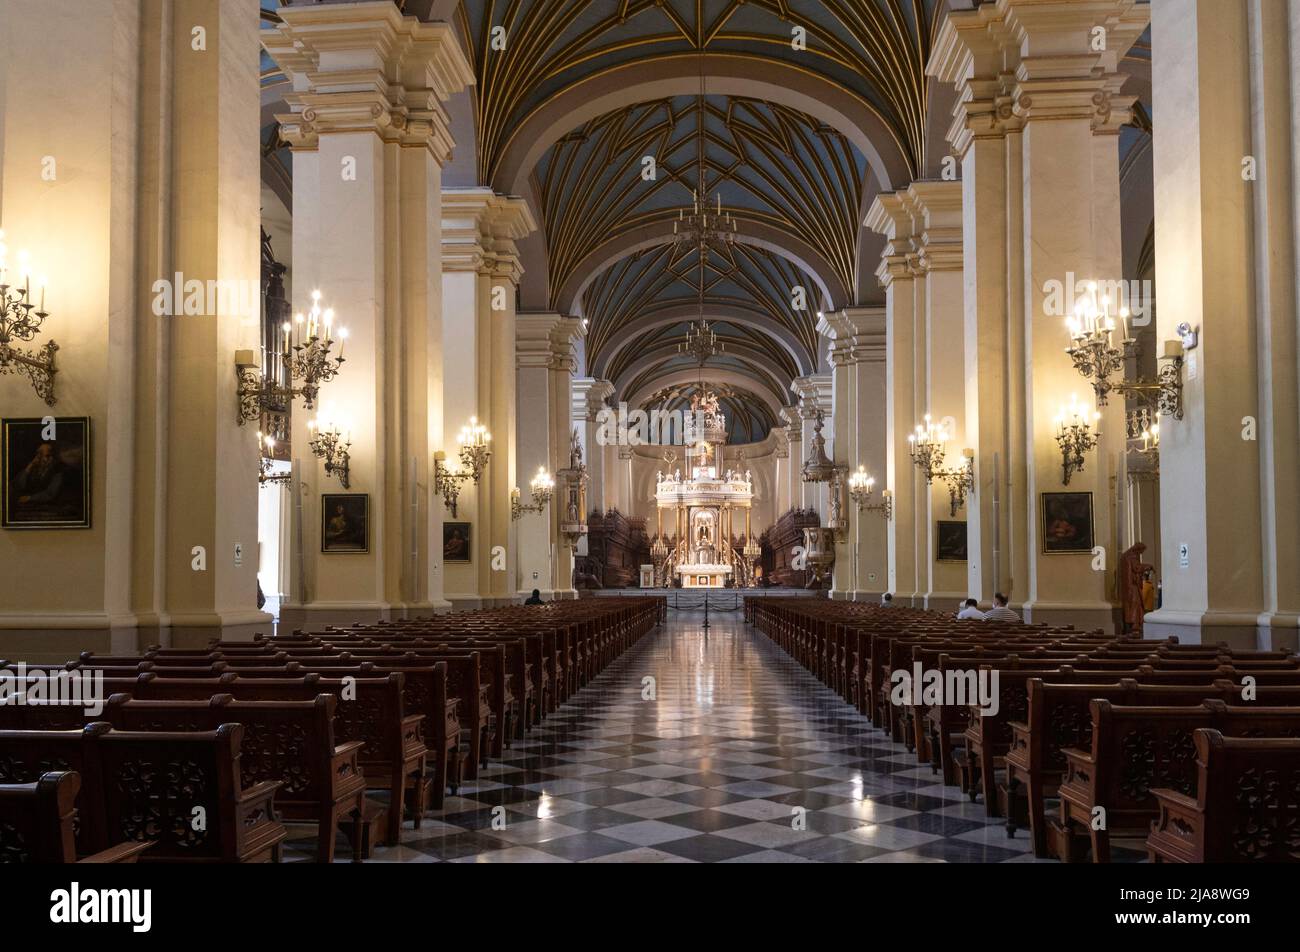 La Basílica Catedral Metropolitana de Lima y Primado del Perú, por otra parte la Catedral Metropolitana de Lima, es una catedral católica romana ubicada en el P. Foto de stock